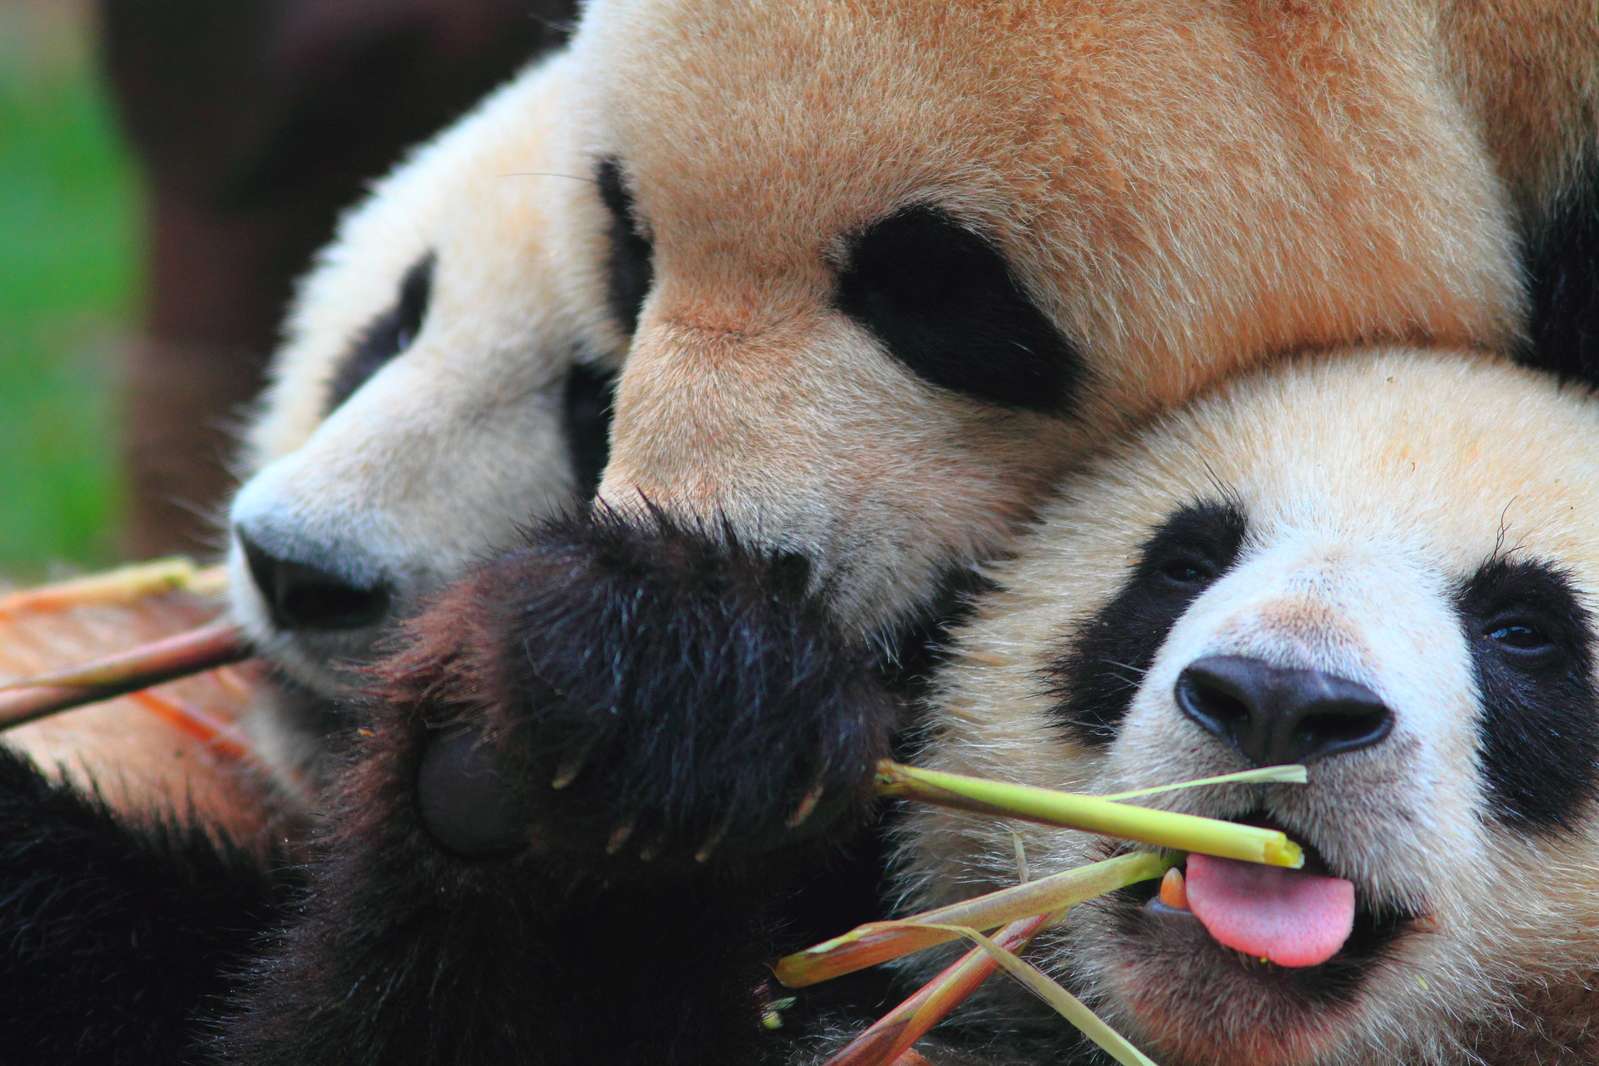 pandas cuddling, Chengdu Panda Base, China